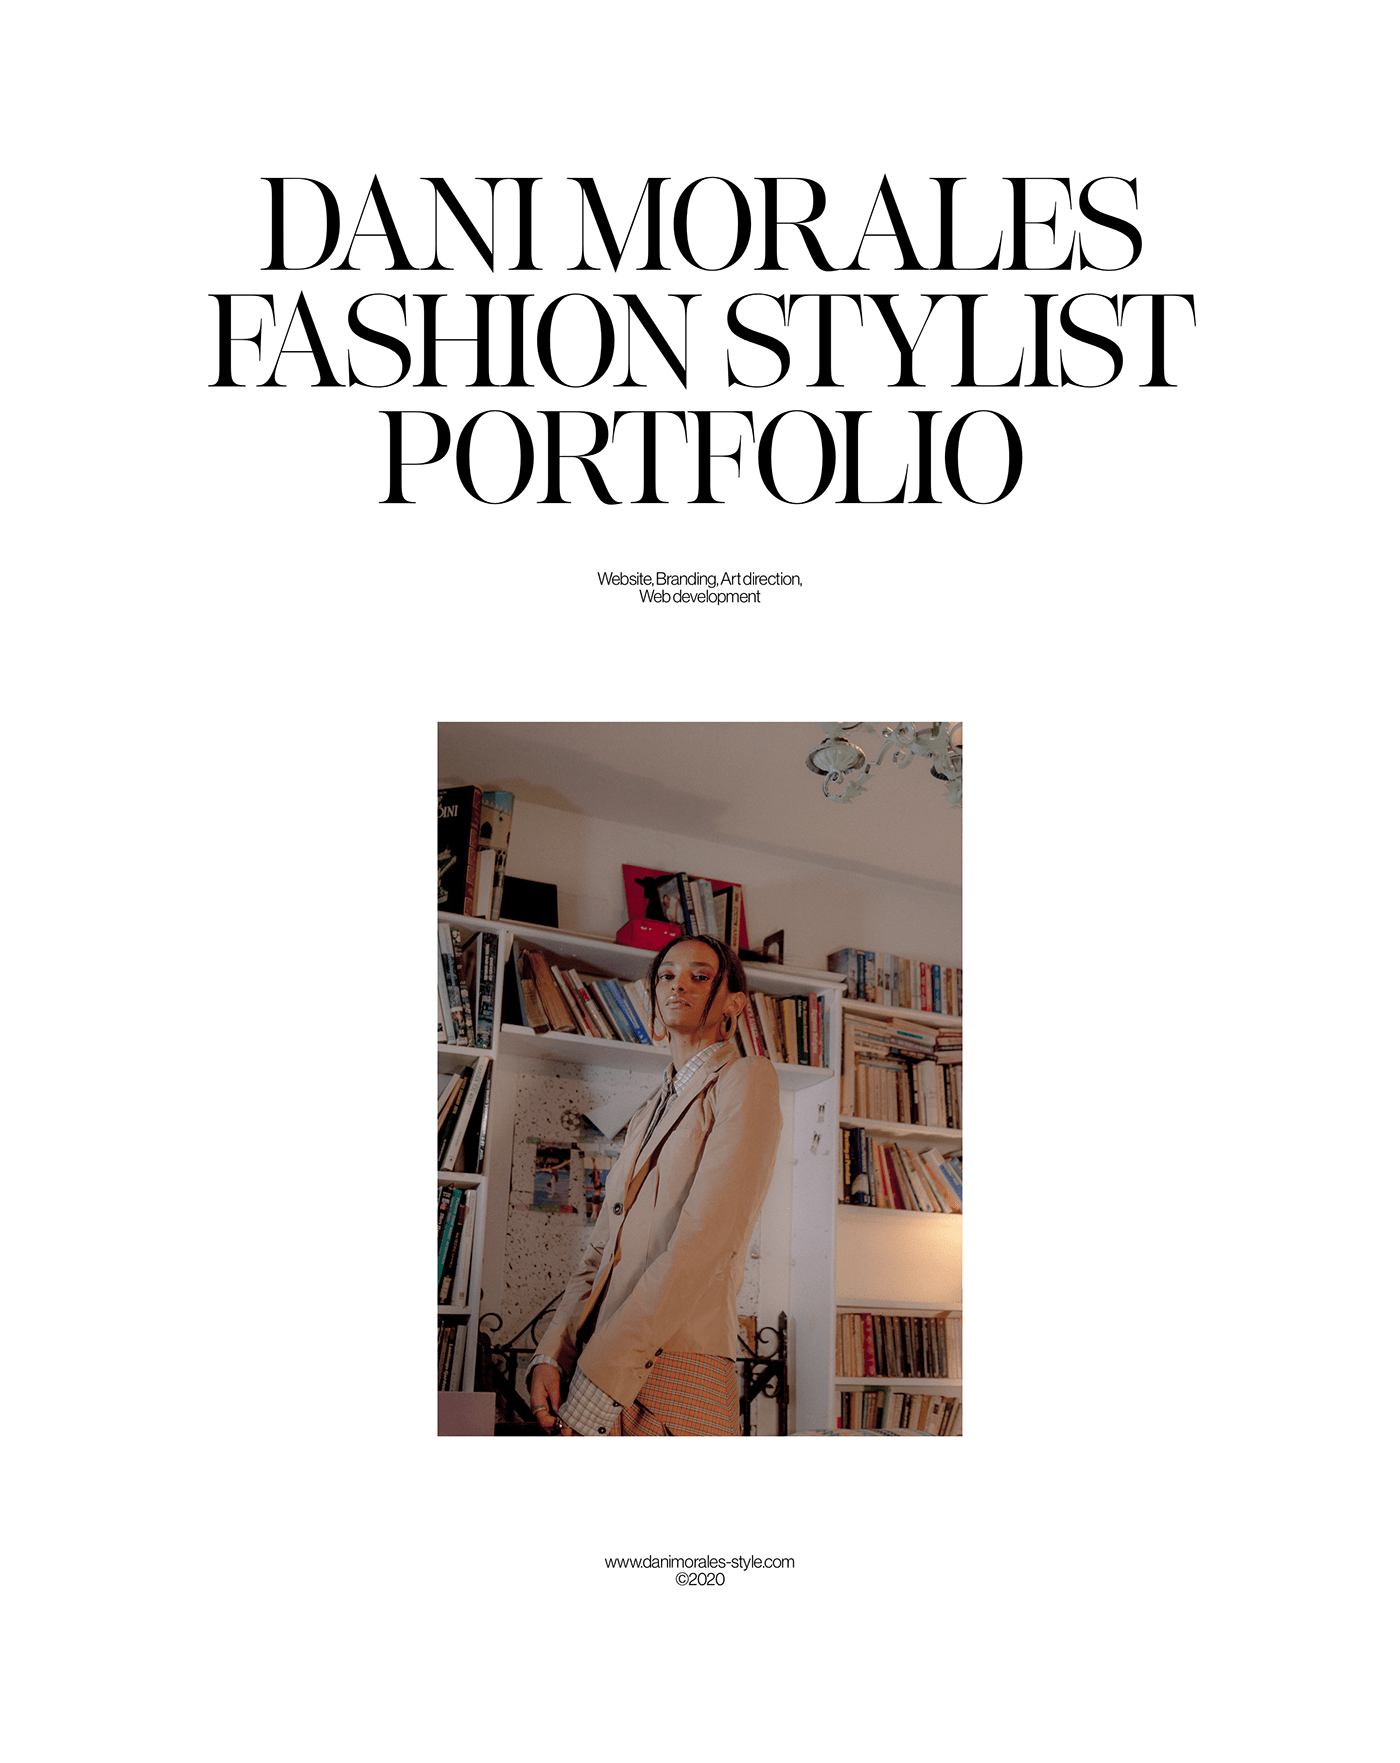 Portfolios design idea #153: Dani Morales Portfolio